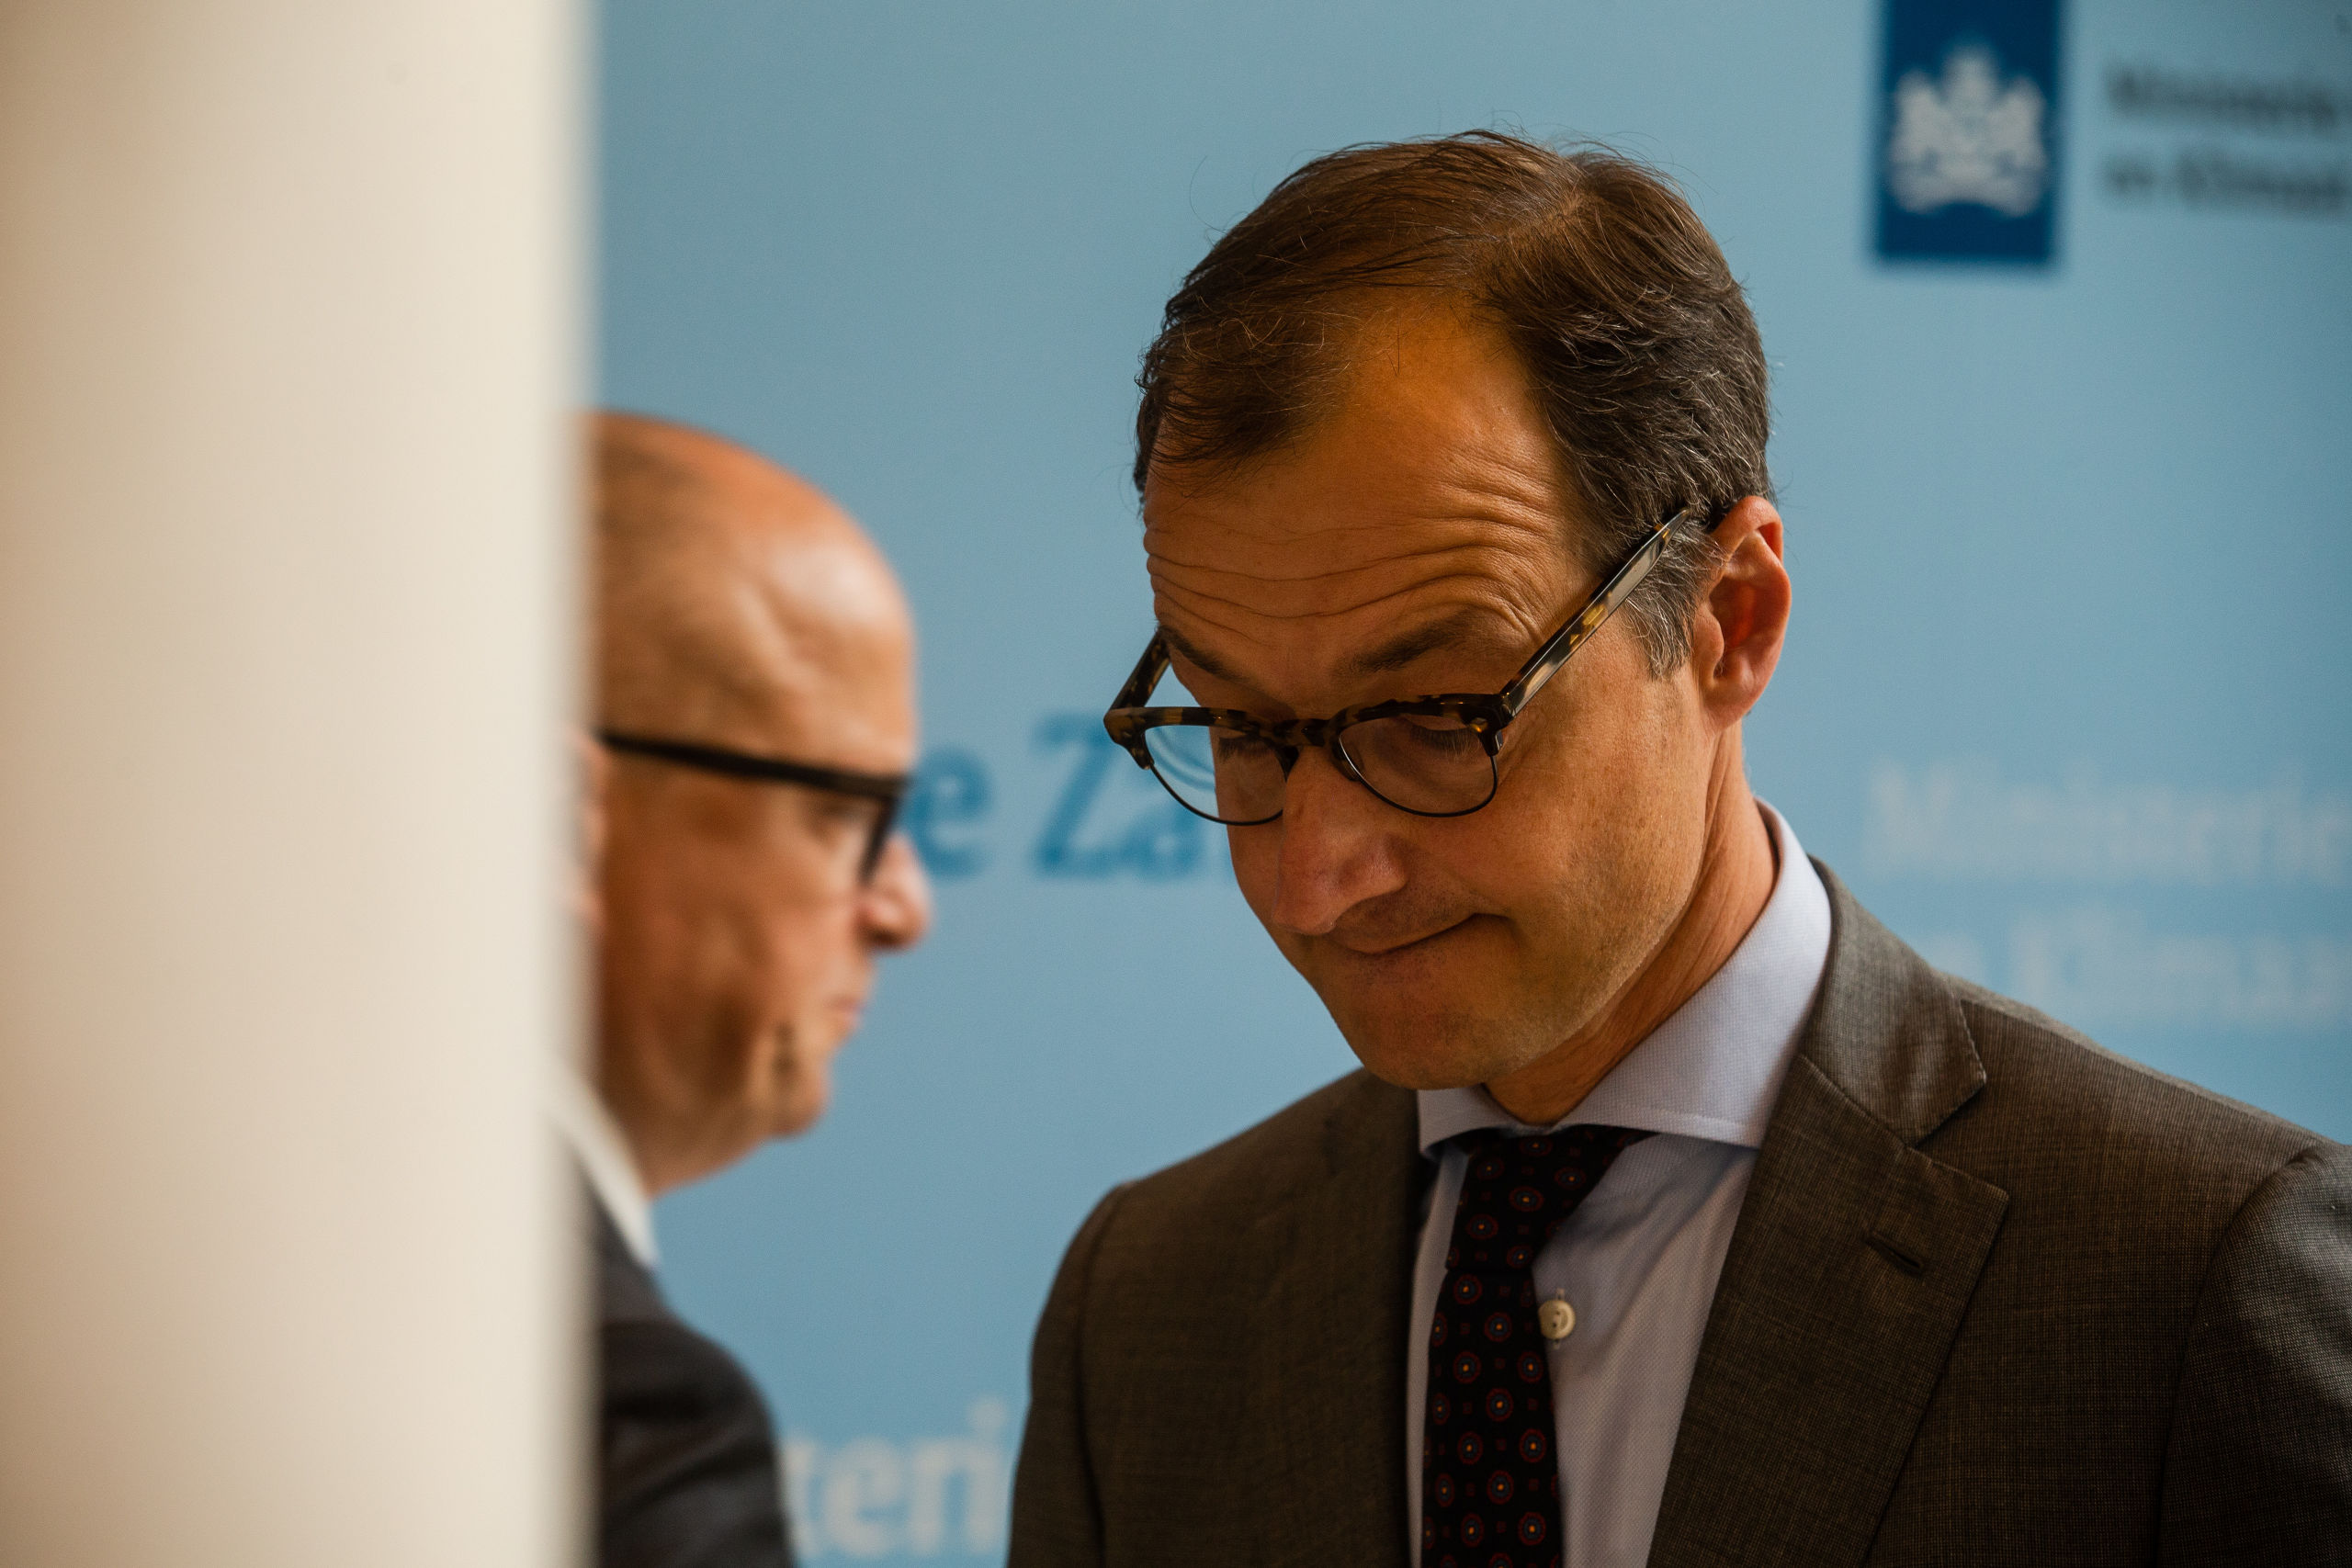 DEN HAAG - Minister Eric Wiebes van Economische Zaken met Rolf de Jong, bestuursvoorzitter van ExxonMobil Holding Company Holland tijdens een toelichting op de gesprekken over de gaswinning in Groningen. ANP ALEXANDER SCHIPPERS 